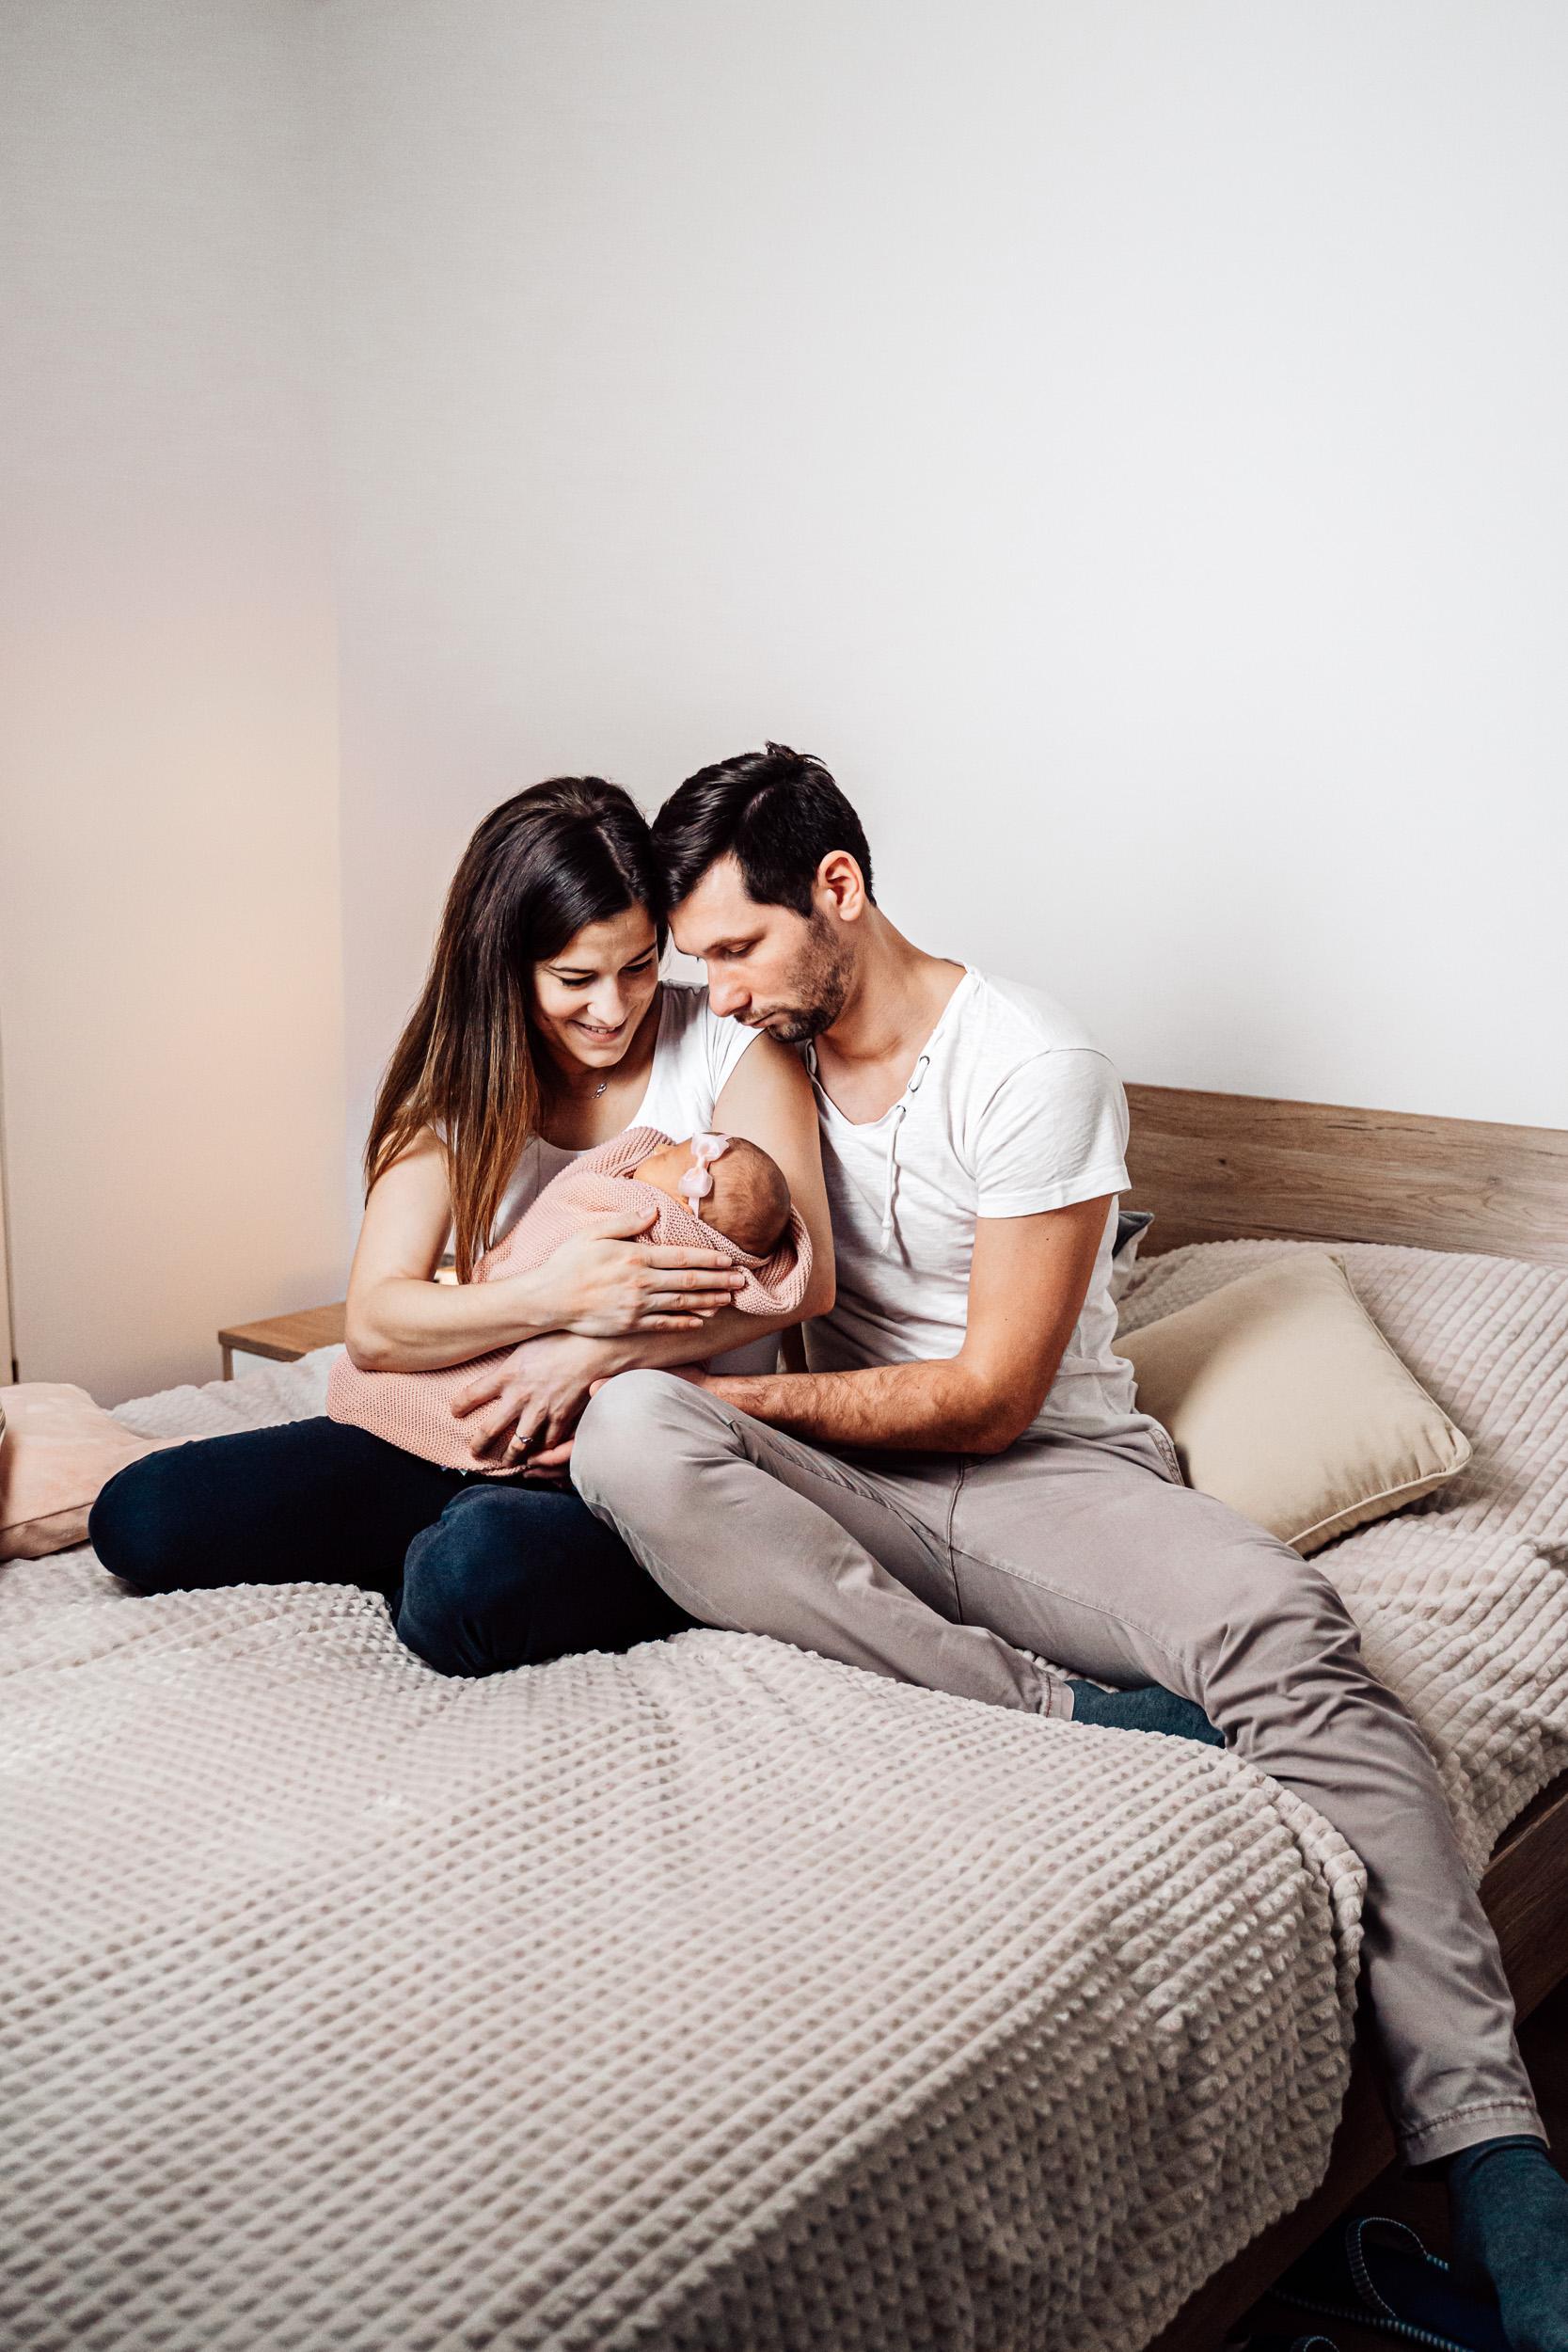 Družinsko fotografiranje in fotografiranje novorojenčkov. Profesionalno fotografiranje na prostem, v studiu in doma